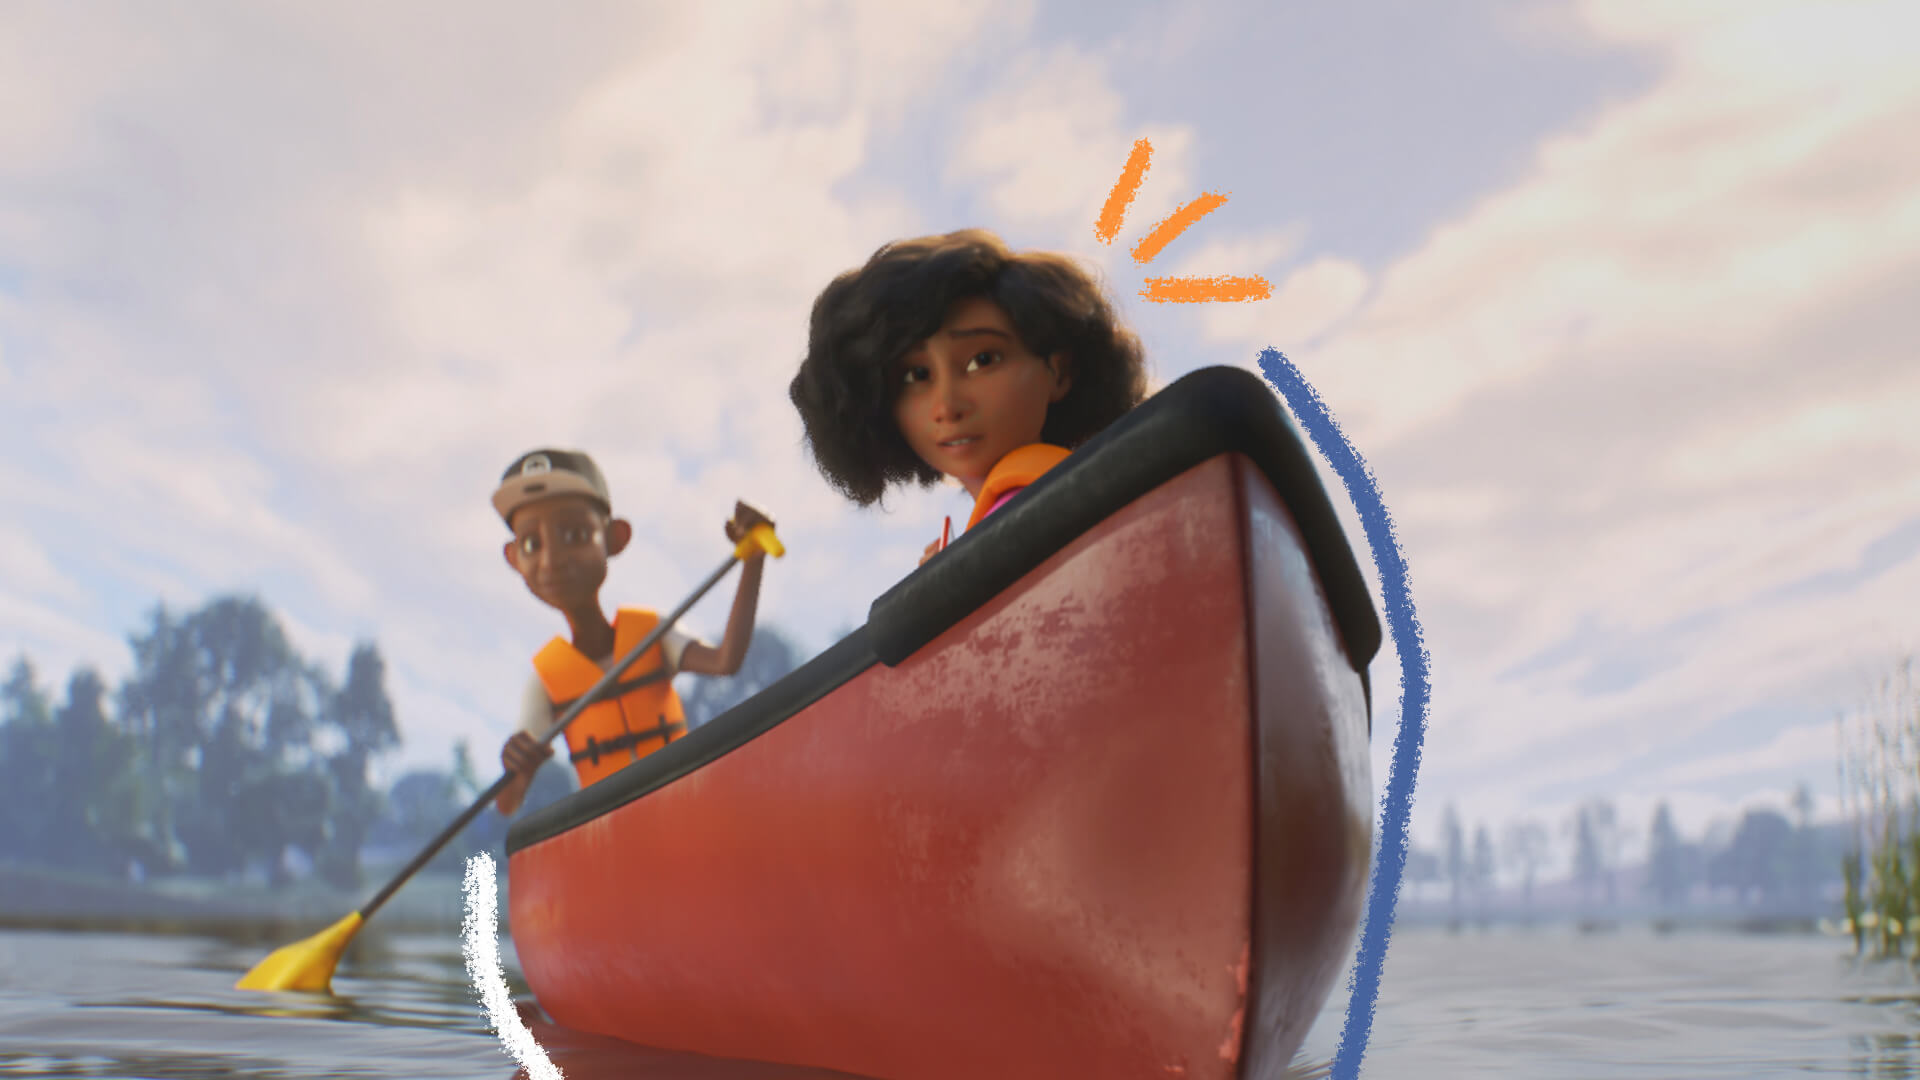 Cena da animação do filme Float, onde uma menina de pele negra e cabelos negros está em um barco em um rio. Do outro lado, o barqueiro rema